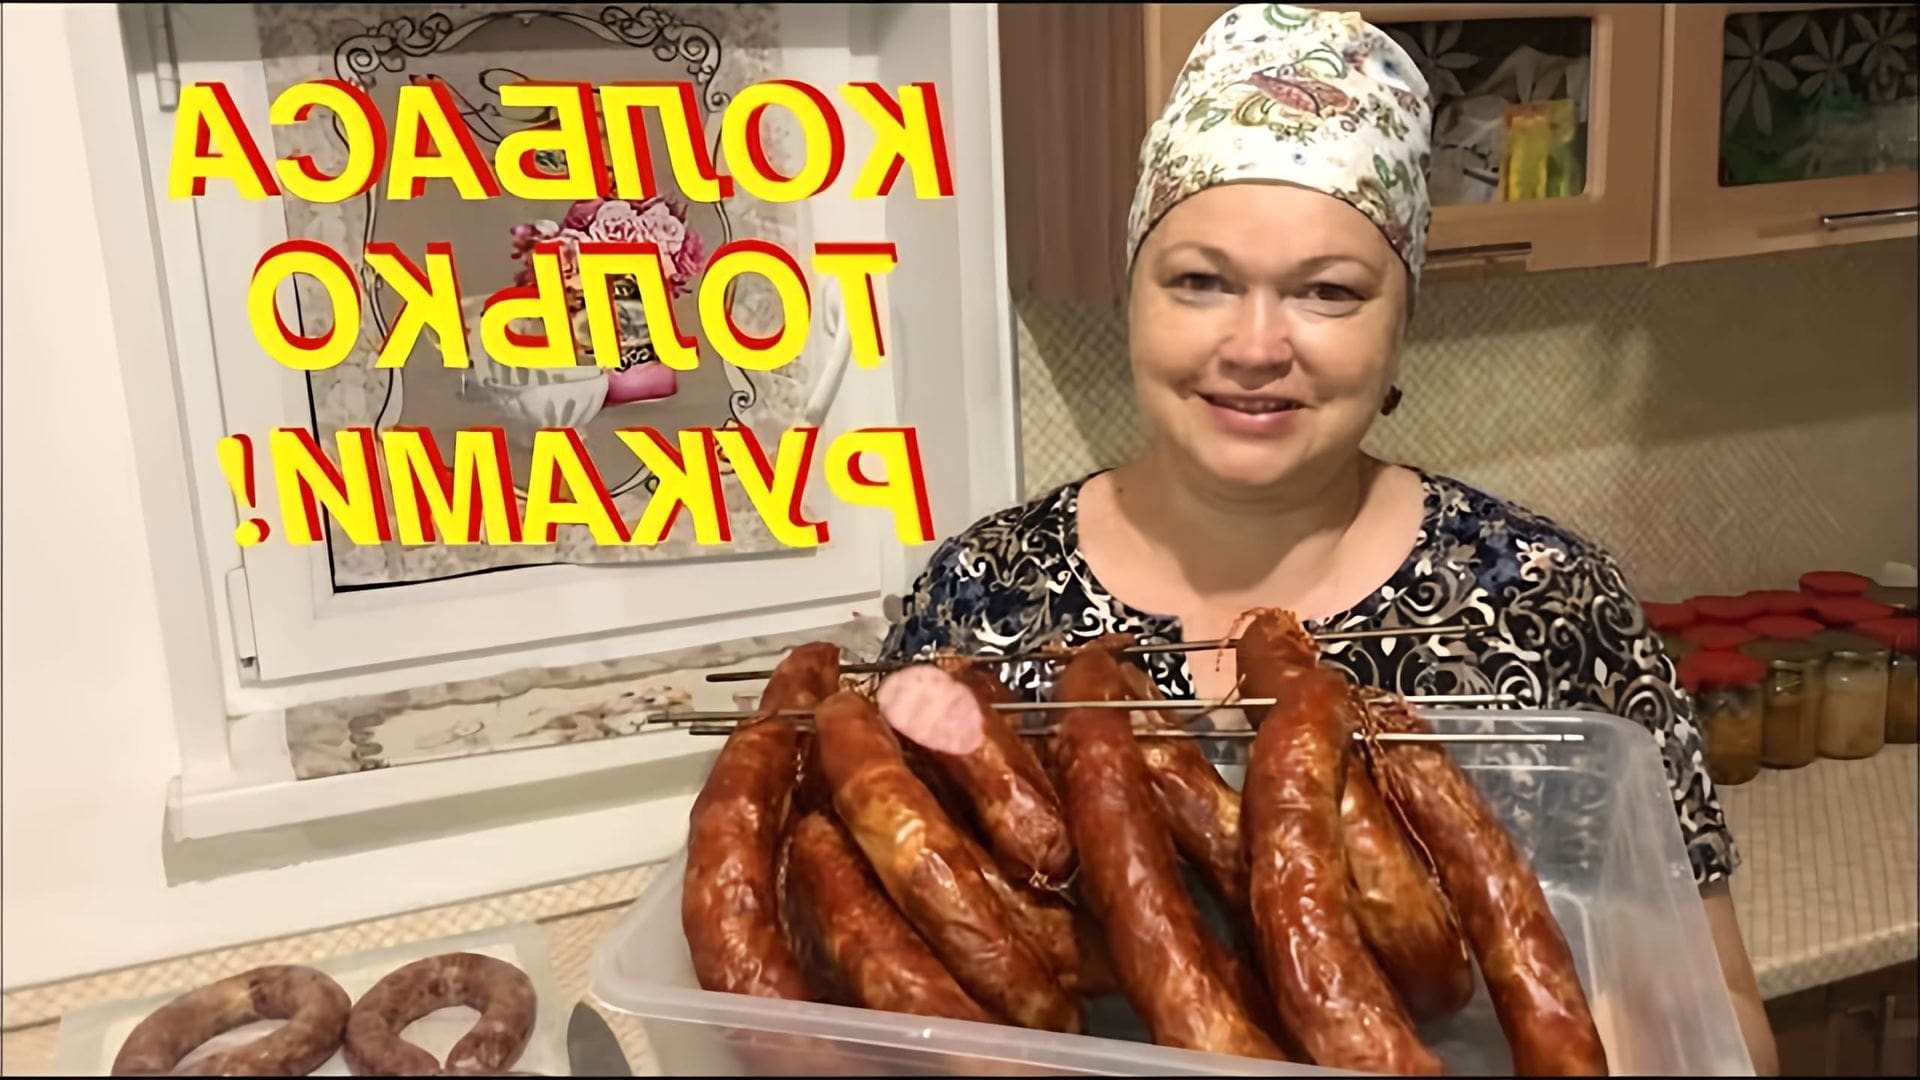 В этом видео автор показывает, как приготовить колбасу в домашних условиях без использования специальных приспособлений